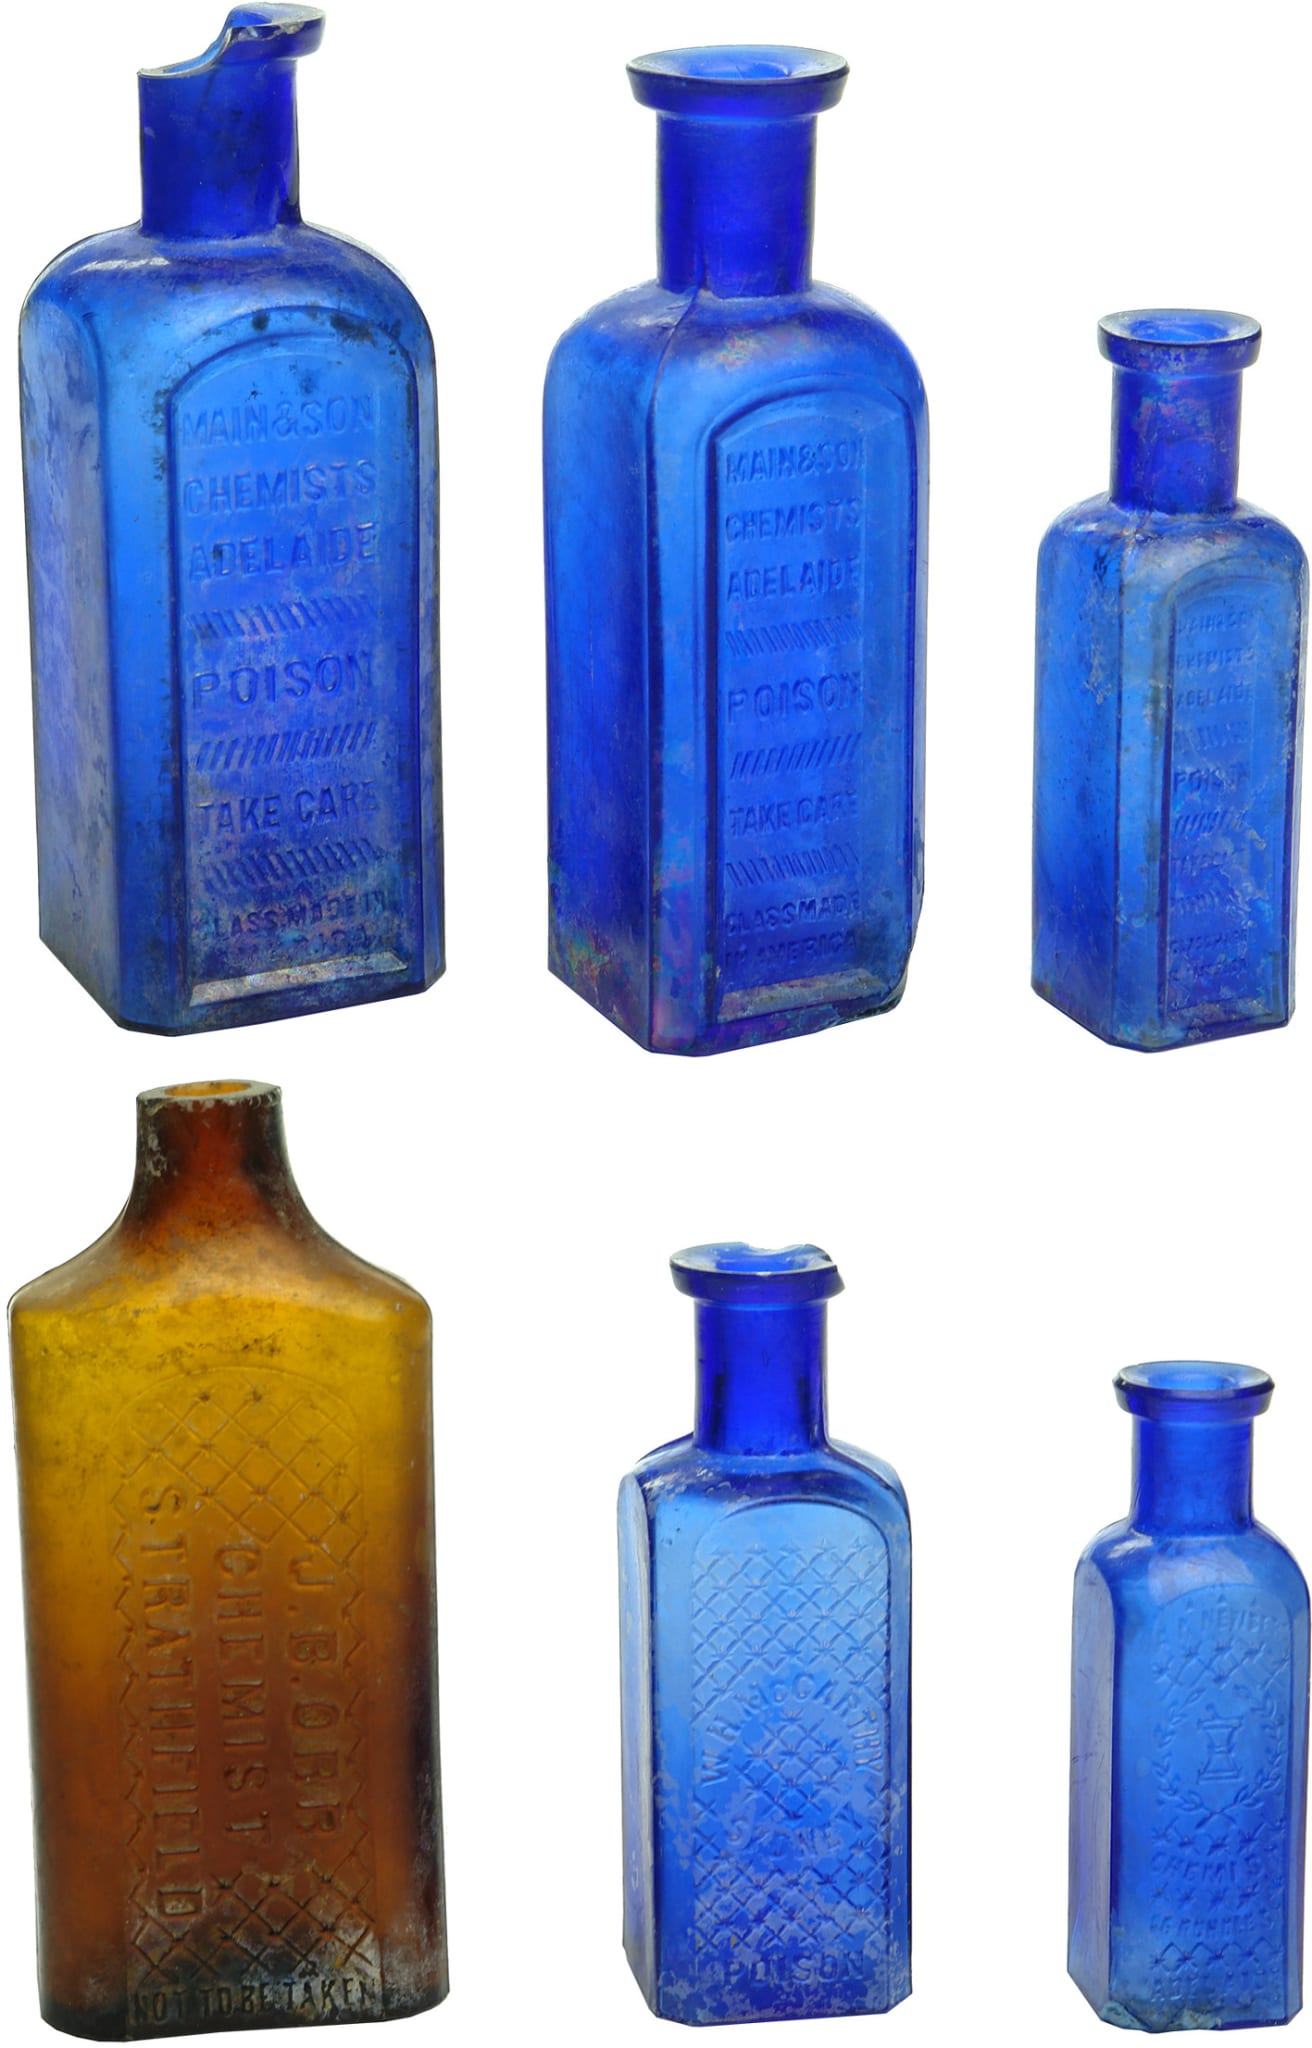 Antique Australian Poison Bottles